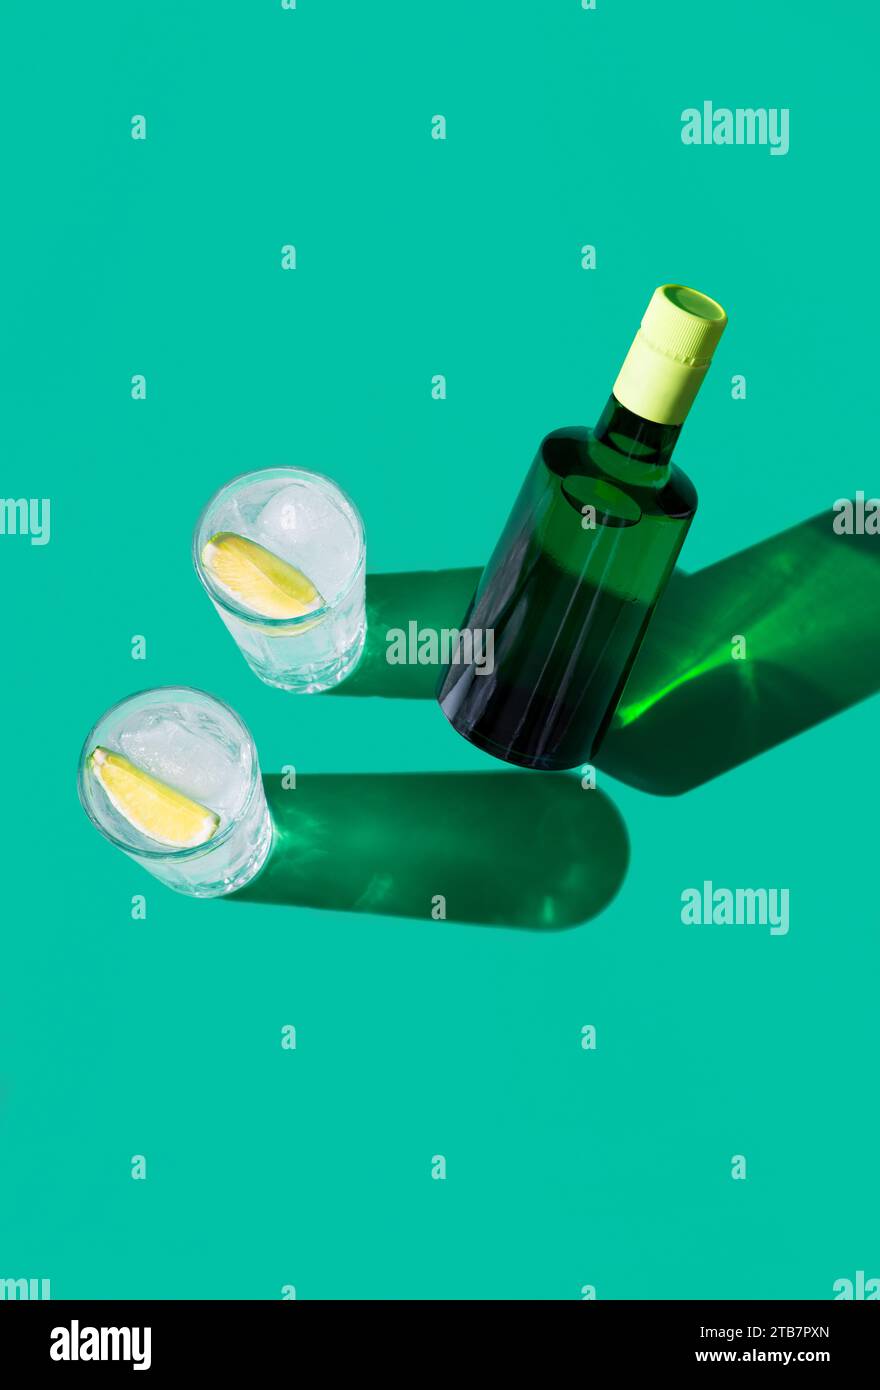 Un cocktail gin tonic élégant dans un verre avec une tranche de citron vert, mis en valeur sur un fond vert avec des ombres vives. Banque D'Images